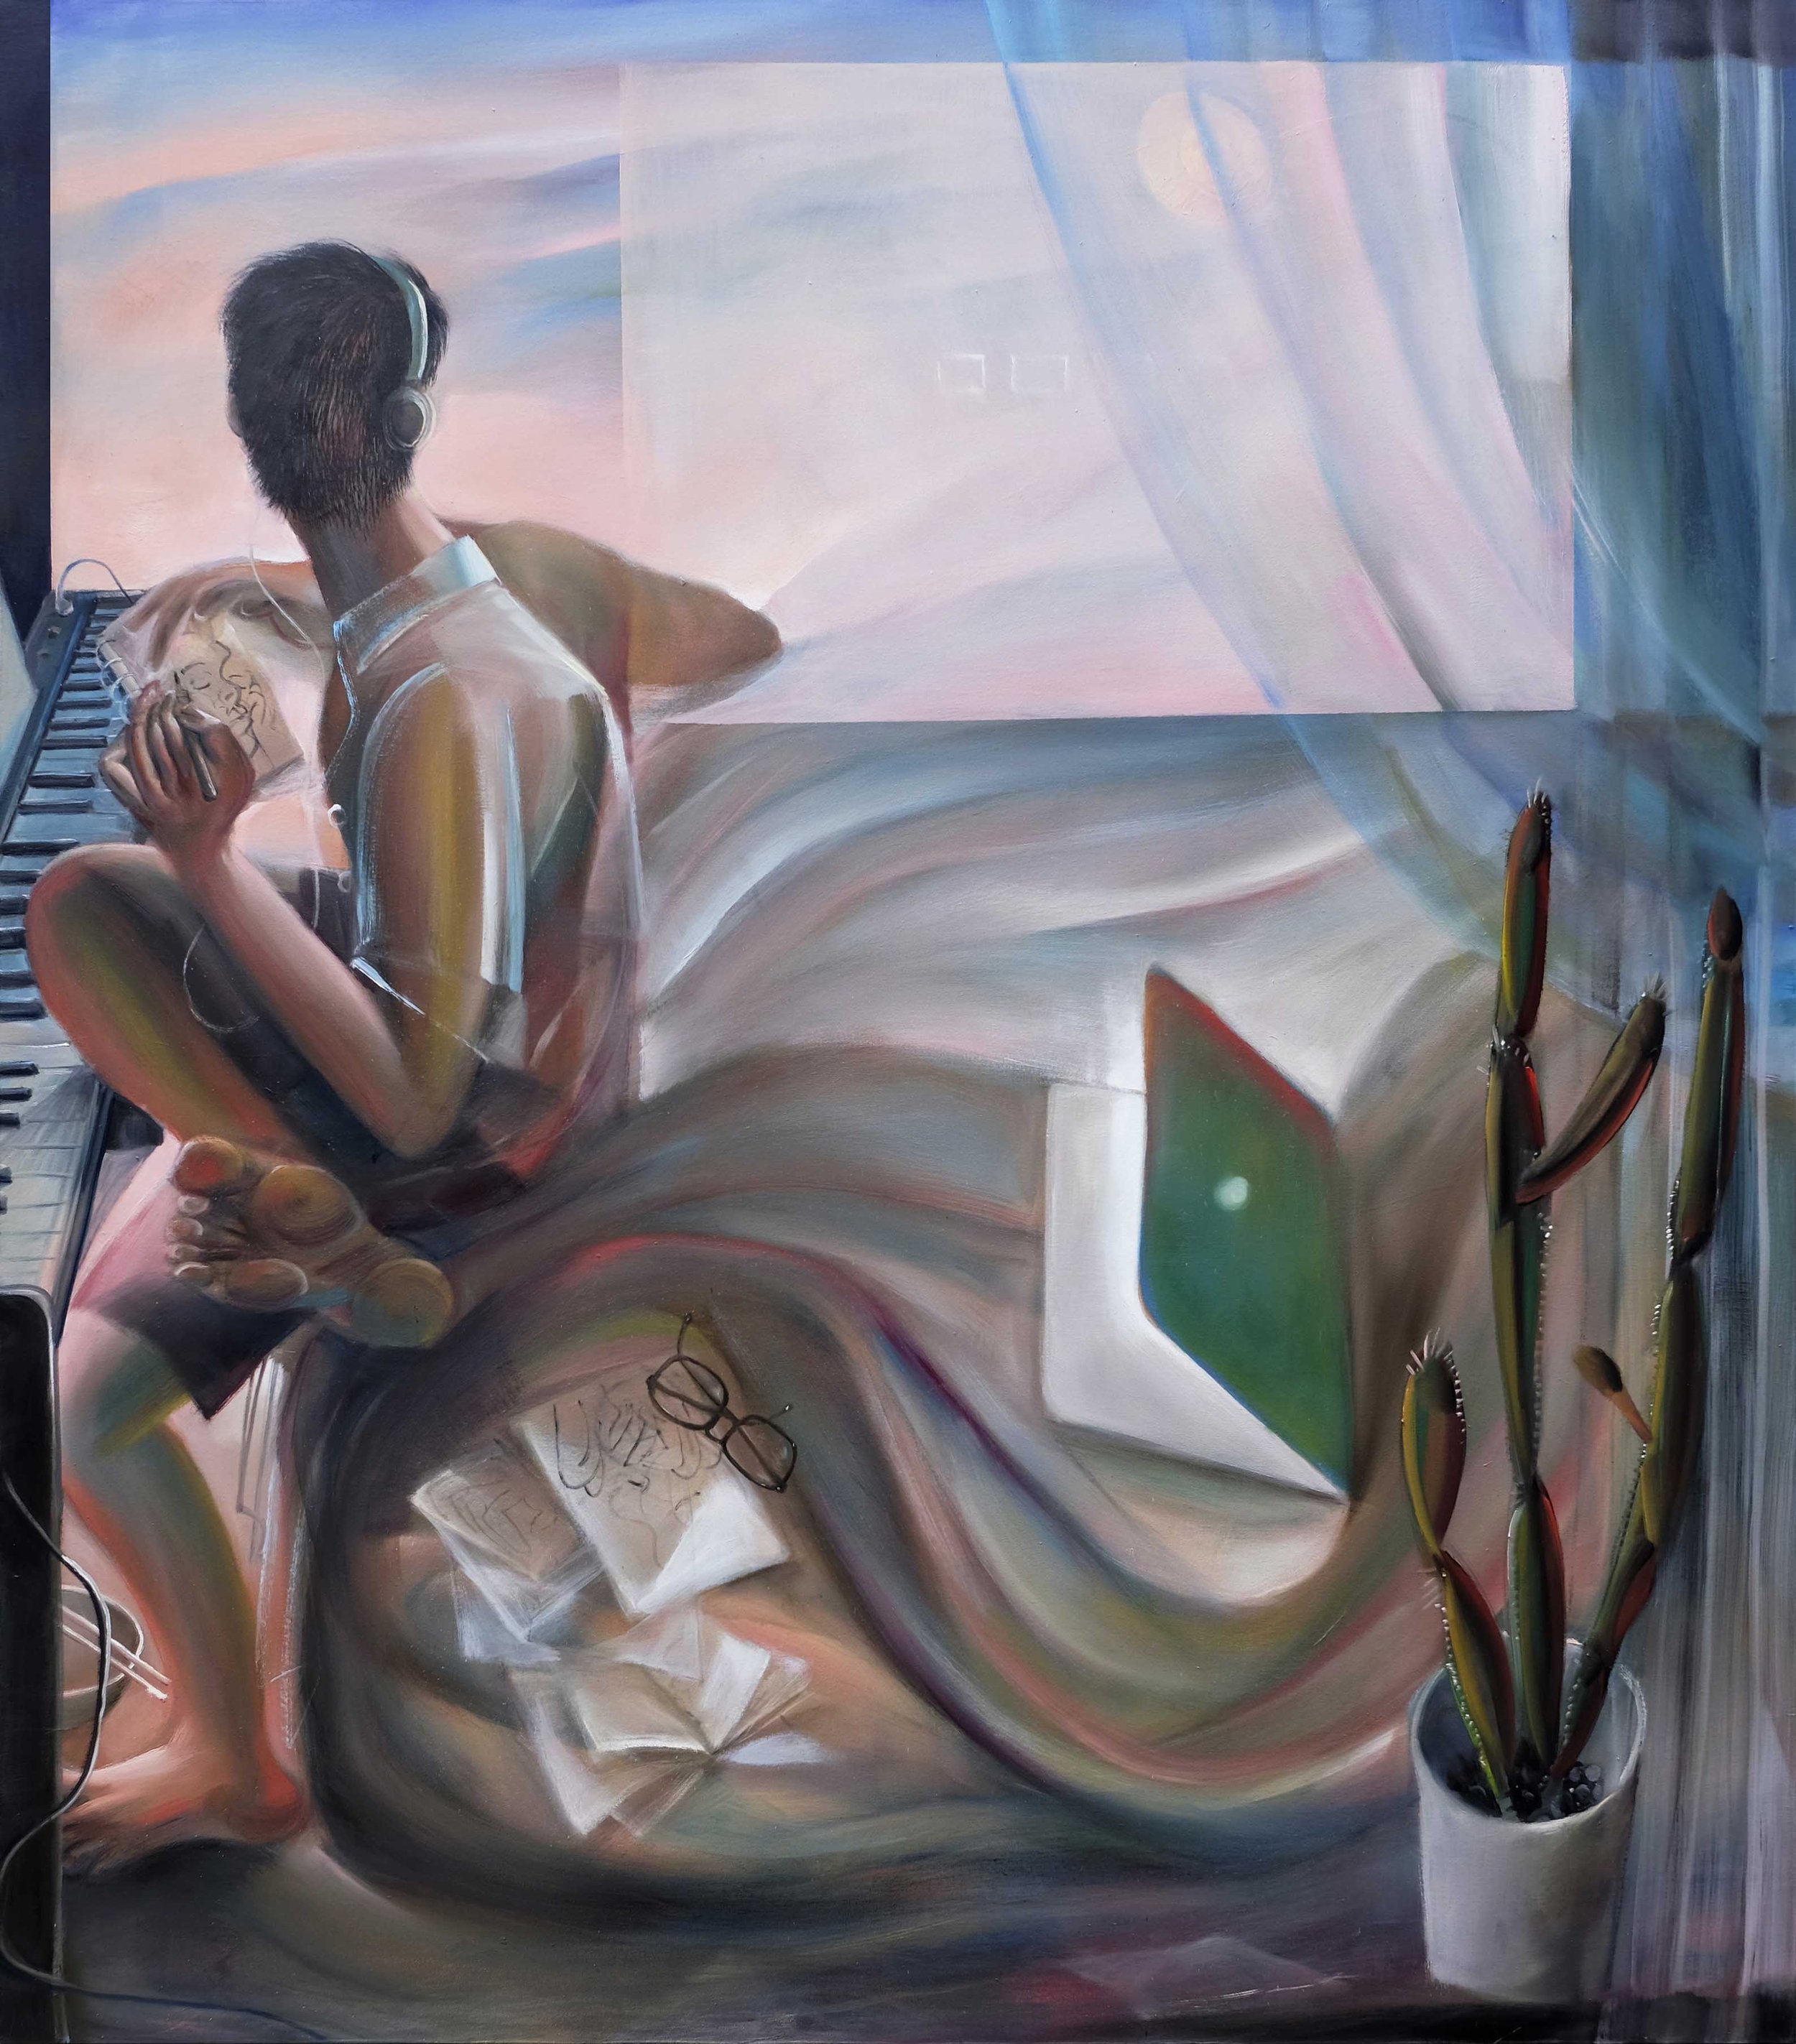   Studio  (2021) oil on canvas, 175 x 200cm 